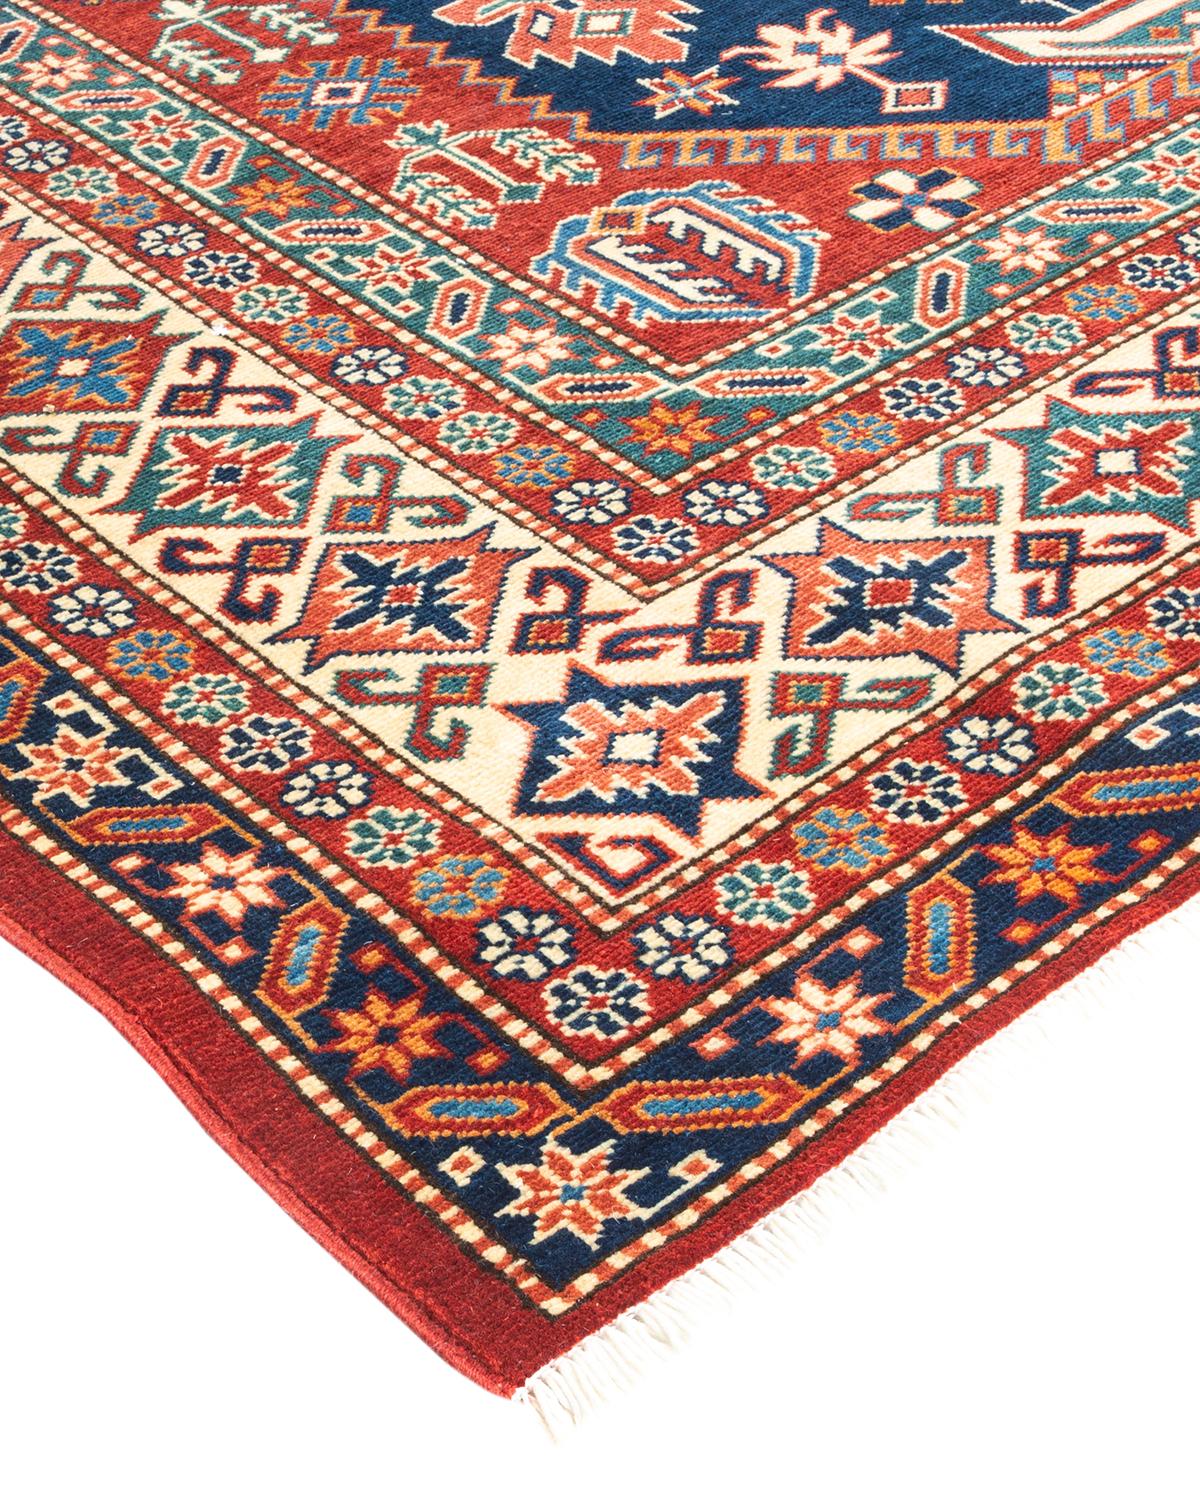 La riche tradition textile de l'Afrique occidentale a inspiré la collection Tribal de tapis noués à la main. Incorporant un mélange de motifs géométriques, dans des palettes allant de la terre à la vivacité, ces tapis apportent un sentiment